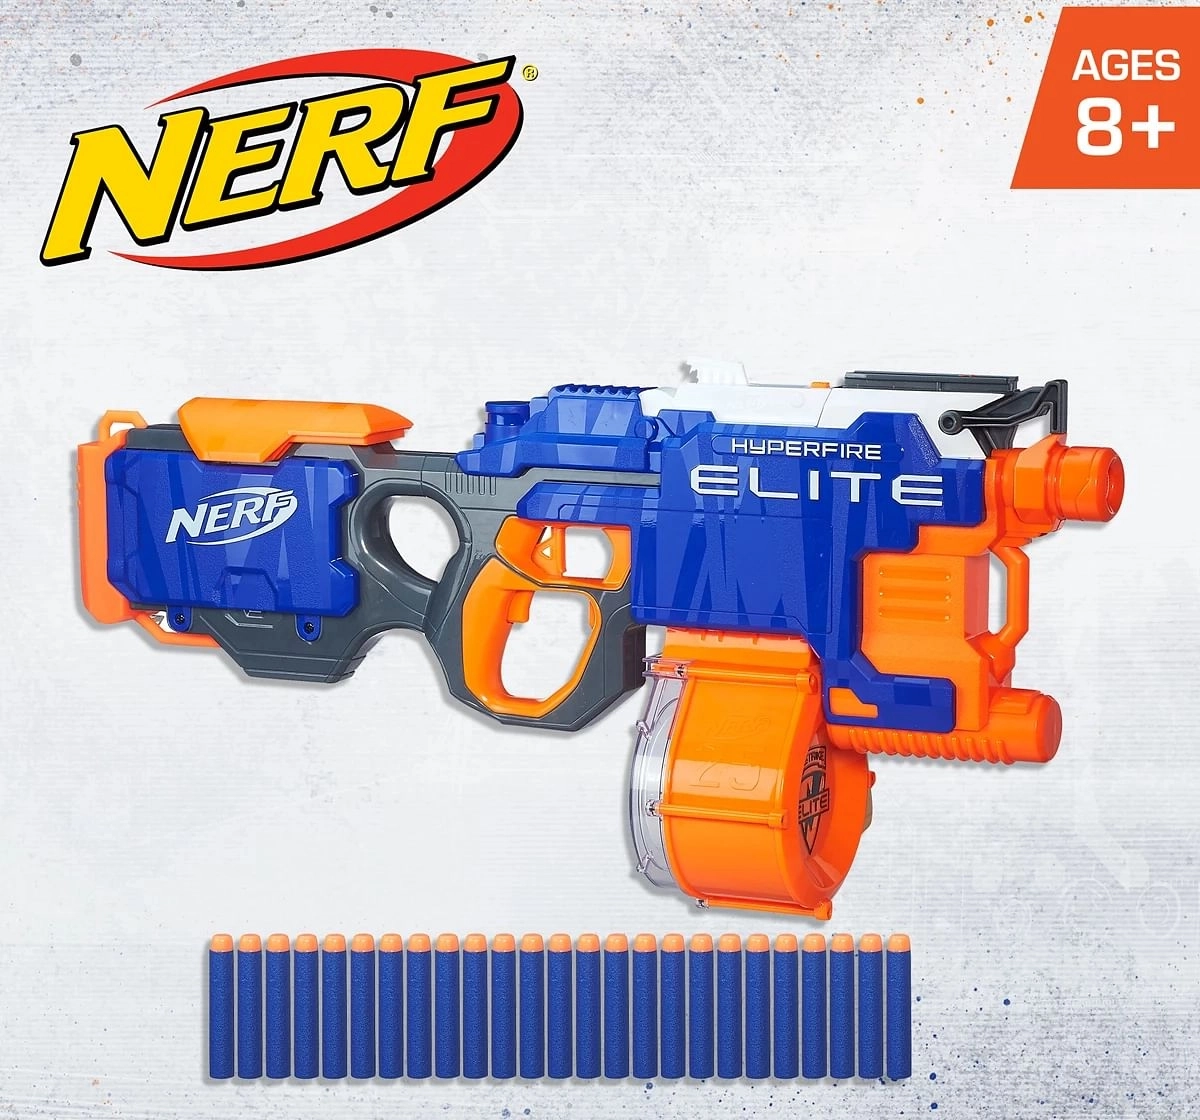 Nerf Hyper Fire Motorized Elite Blaster toy gun for kids 8Y+, Multicolour